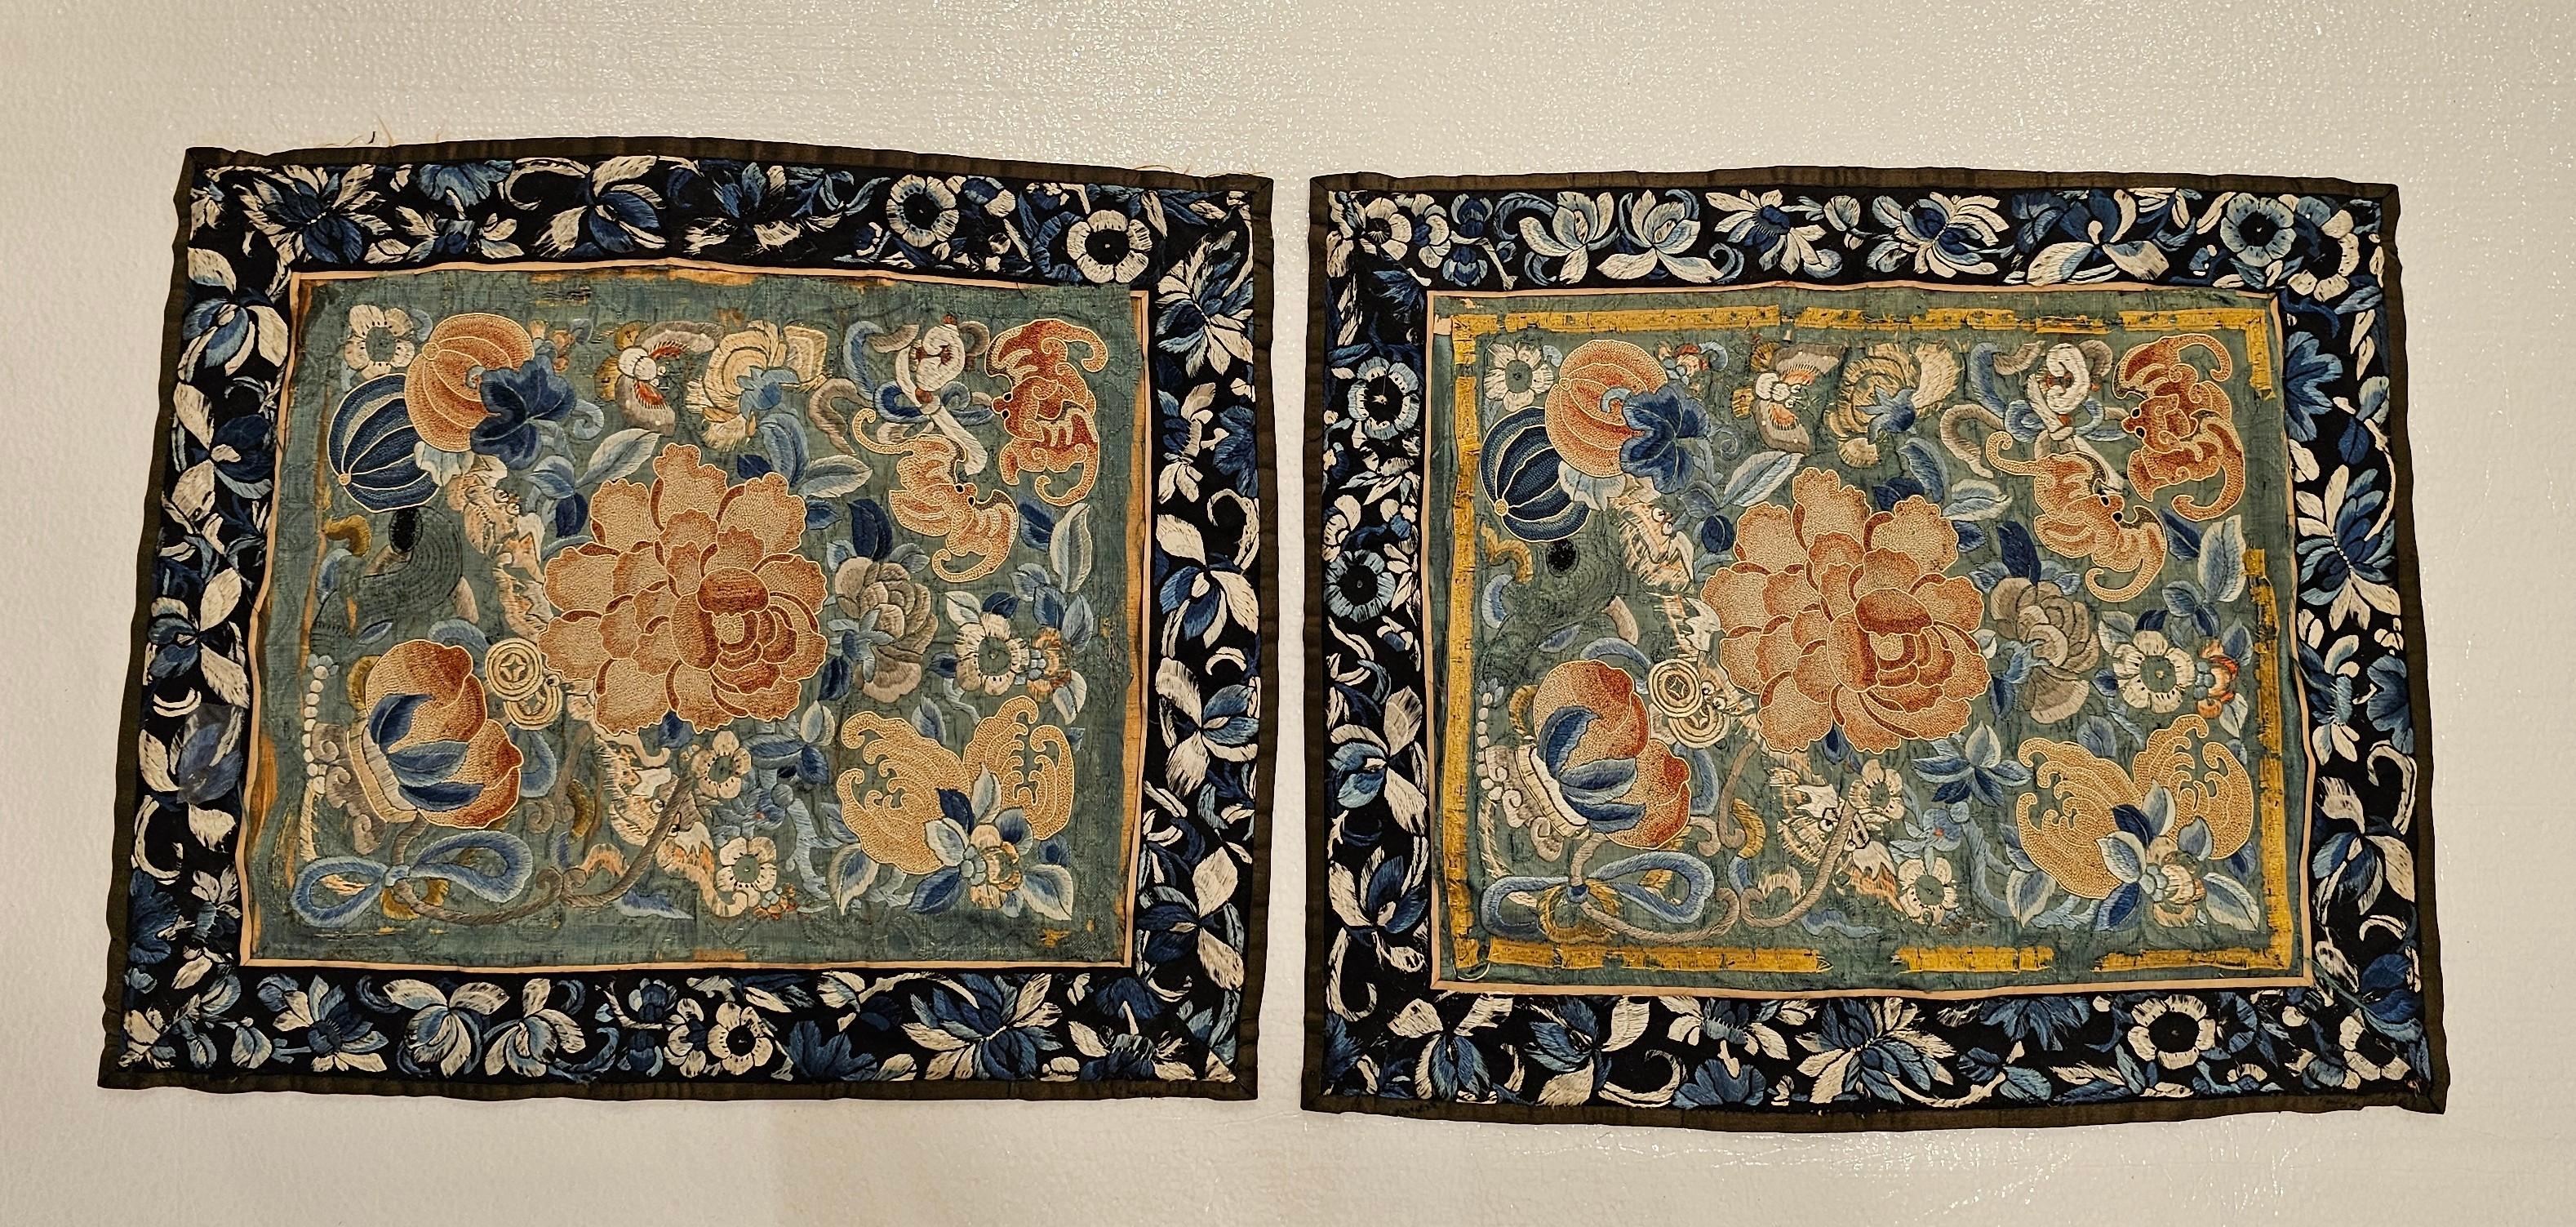 Magnifique paire de panneaux de broderie chinoise du 19e siècle.  Chaque panneau est orné d'une broderie à la main extrêmement fine de fleurs, de chauves-souris et de papillons de nuit sur un fond de soie verte,  Chaque panneau est orné d'un